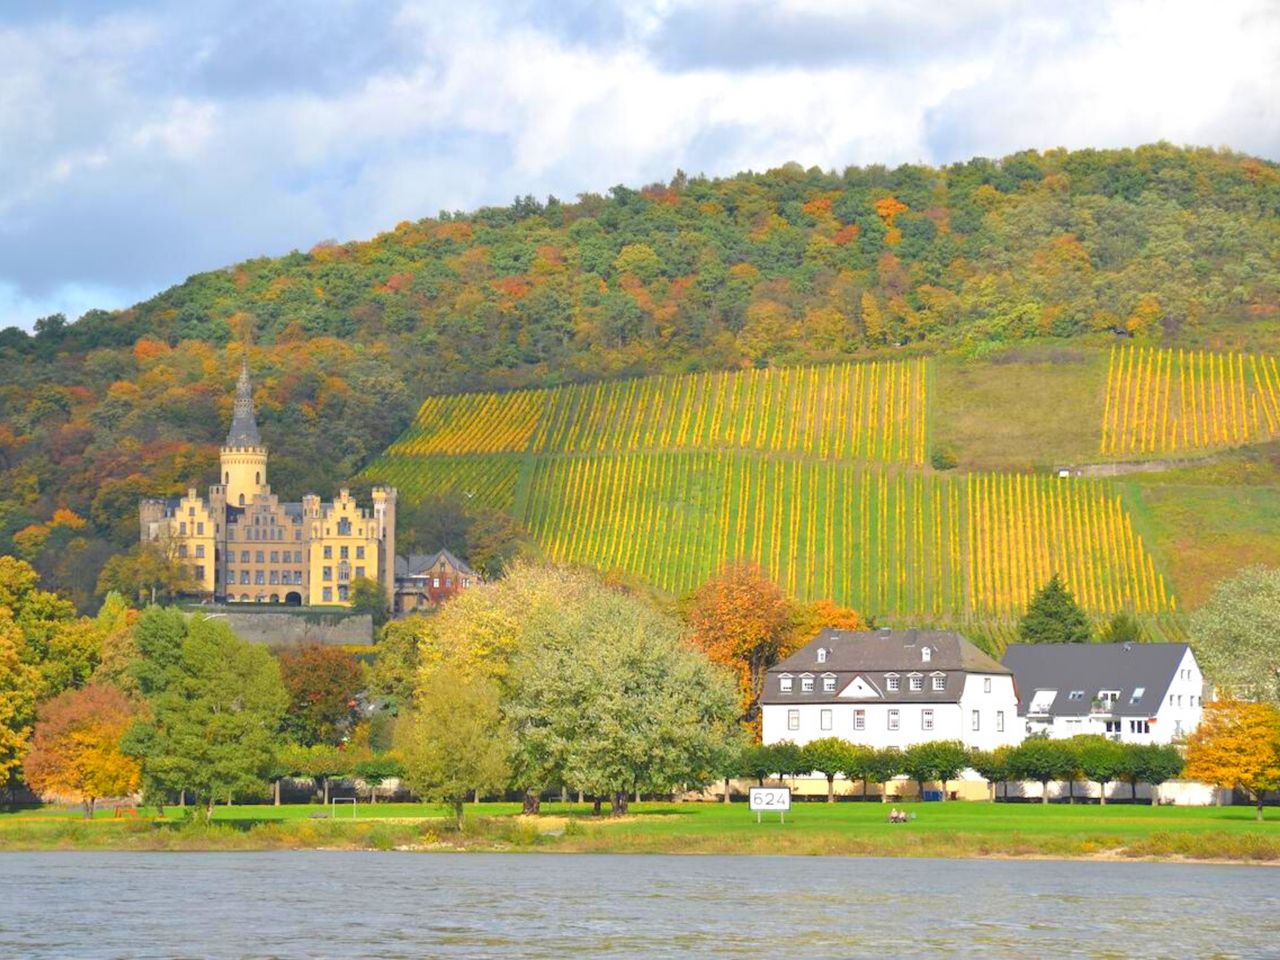 Warum ist es am Rhein so schön?